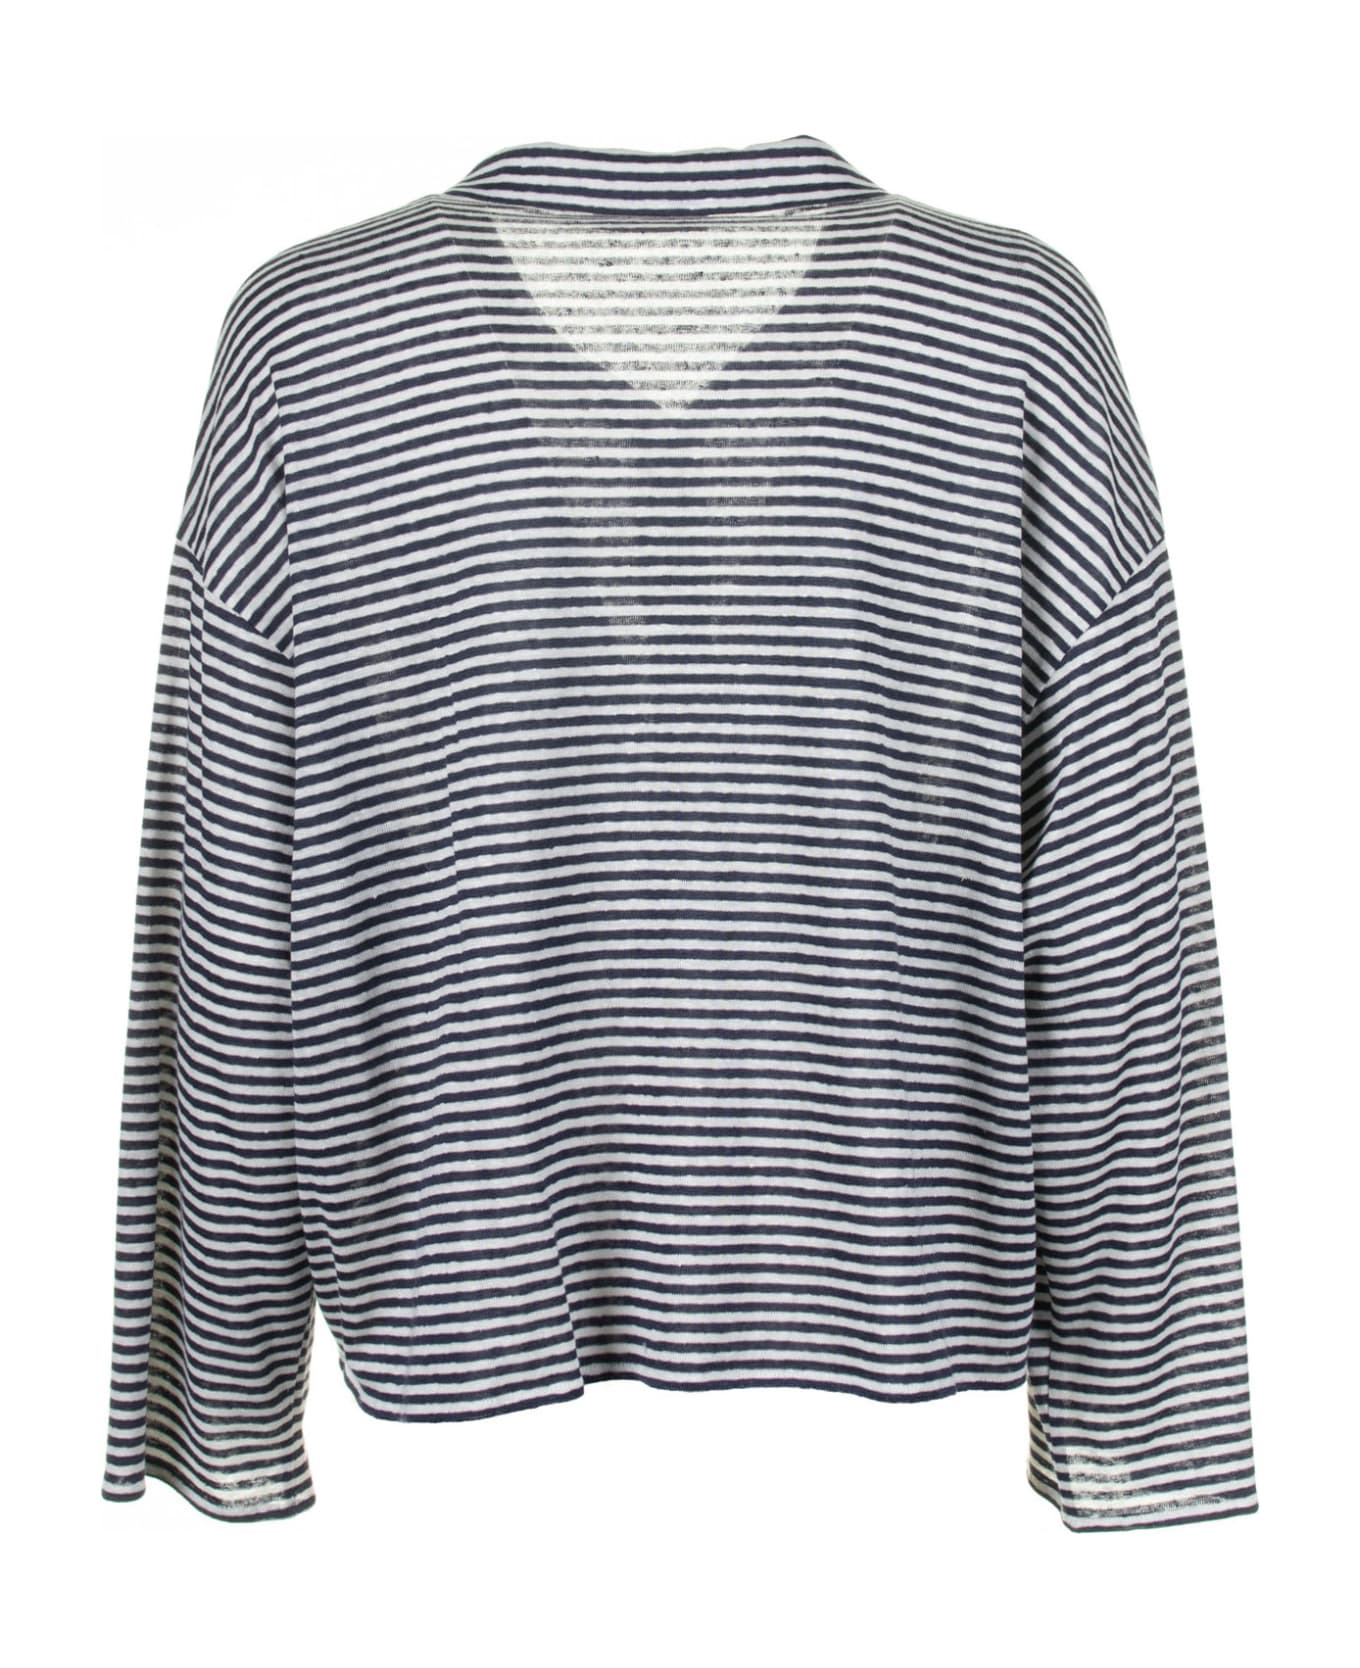 Via Masini 80 Blue And White Striped Shirt - BIANCO/BLU シャツ